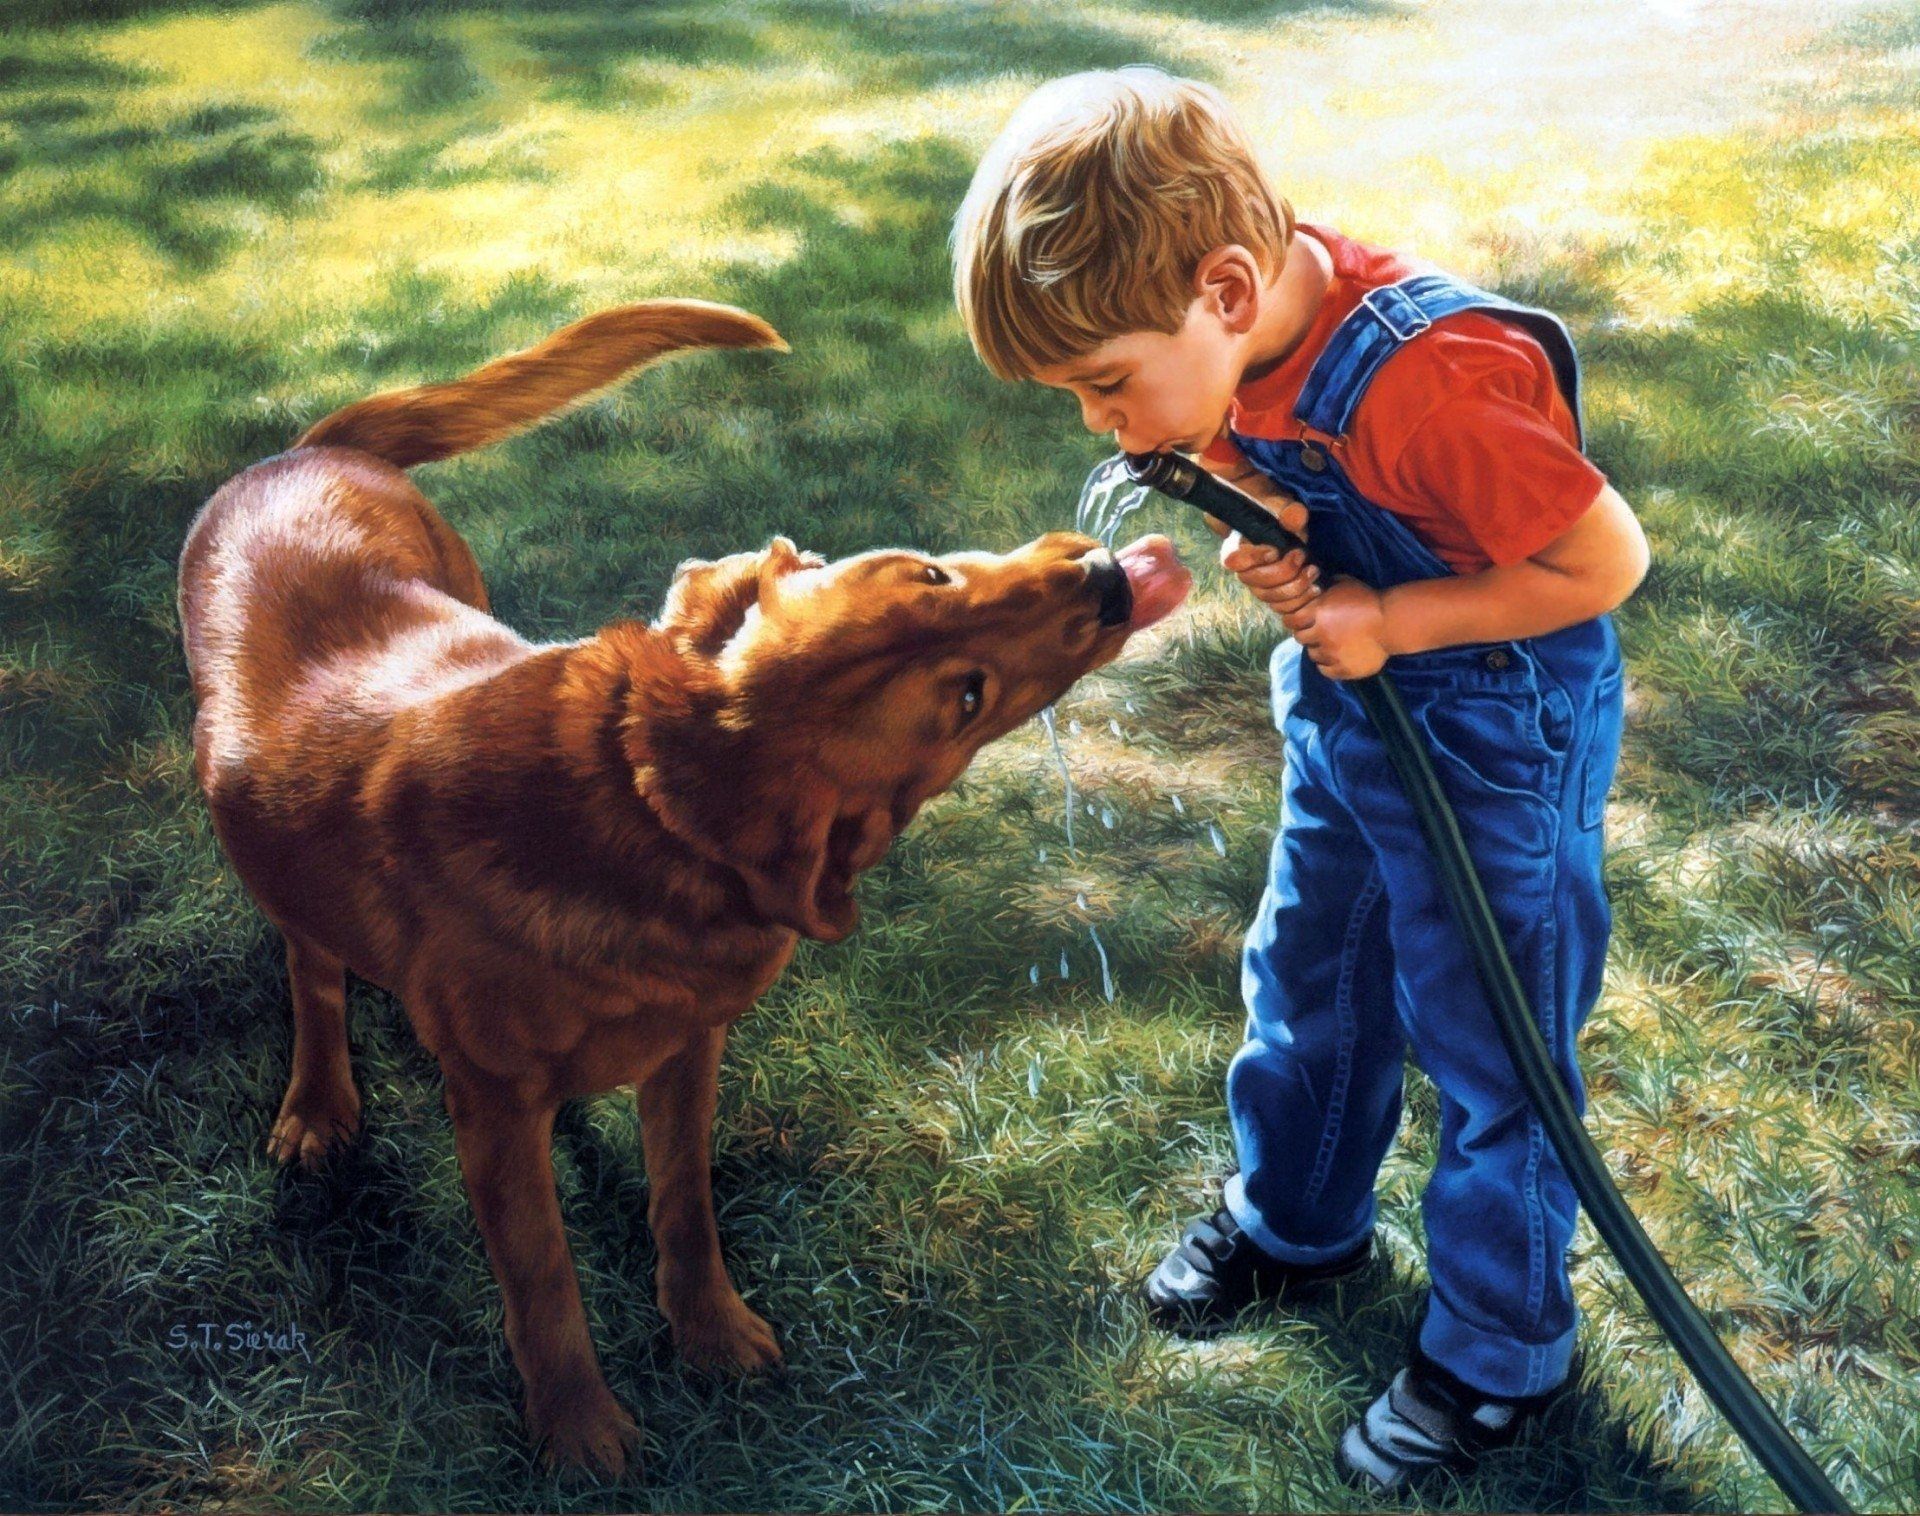 Доброта 74. Художник Tom Sierak. Дети и животные доброта. Собака для детей. Мальчик с собакой.